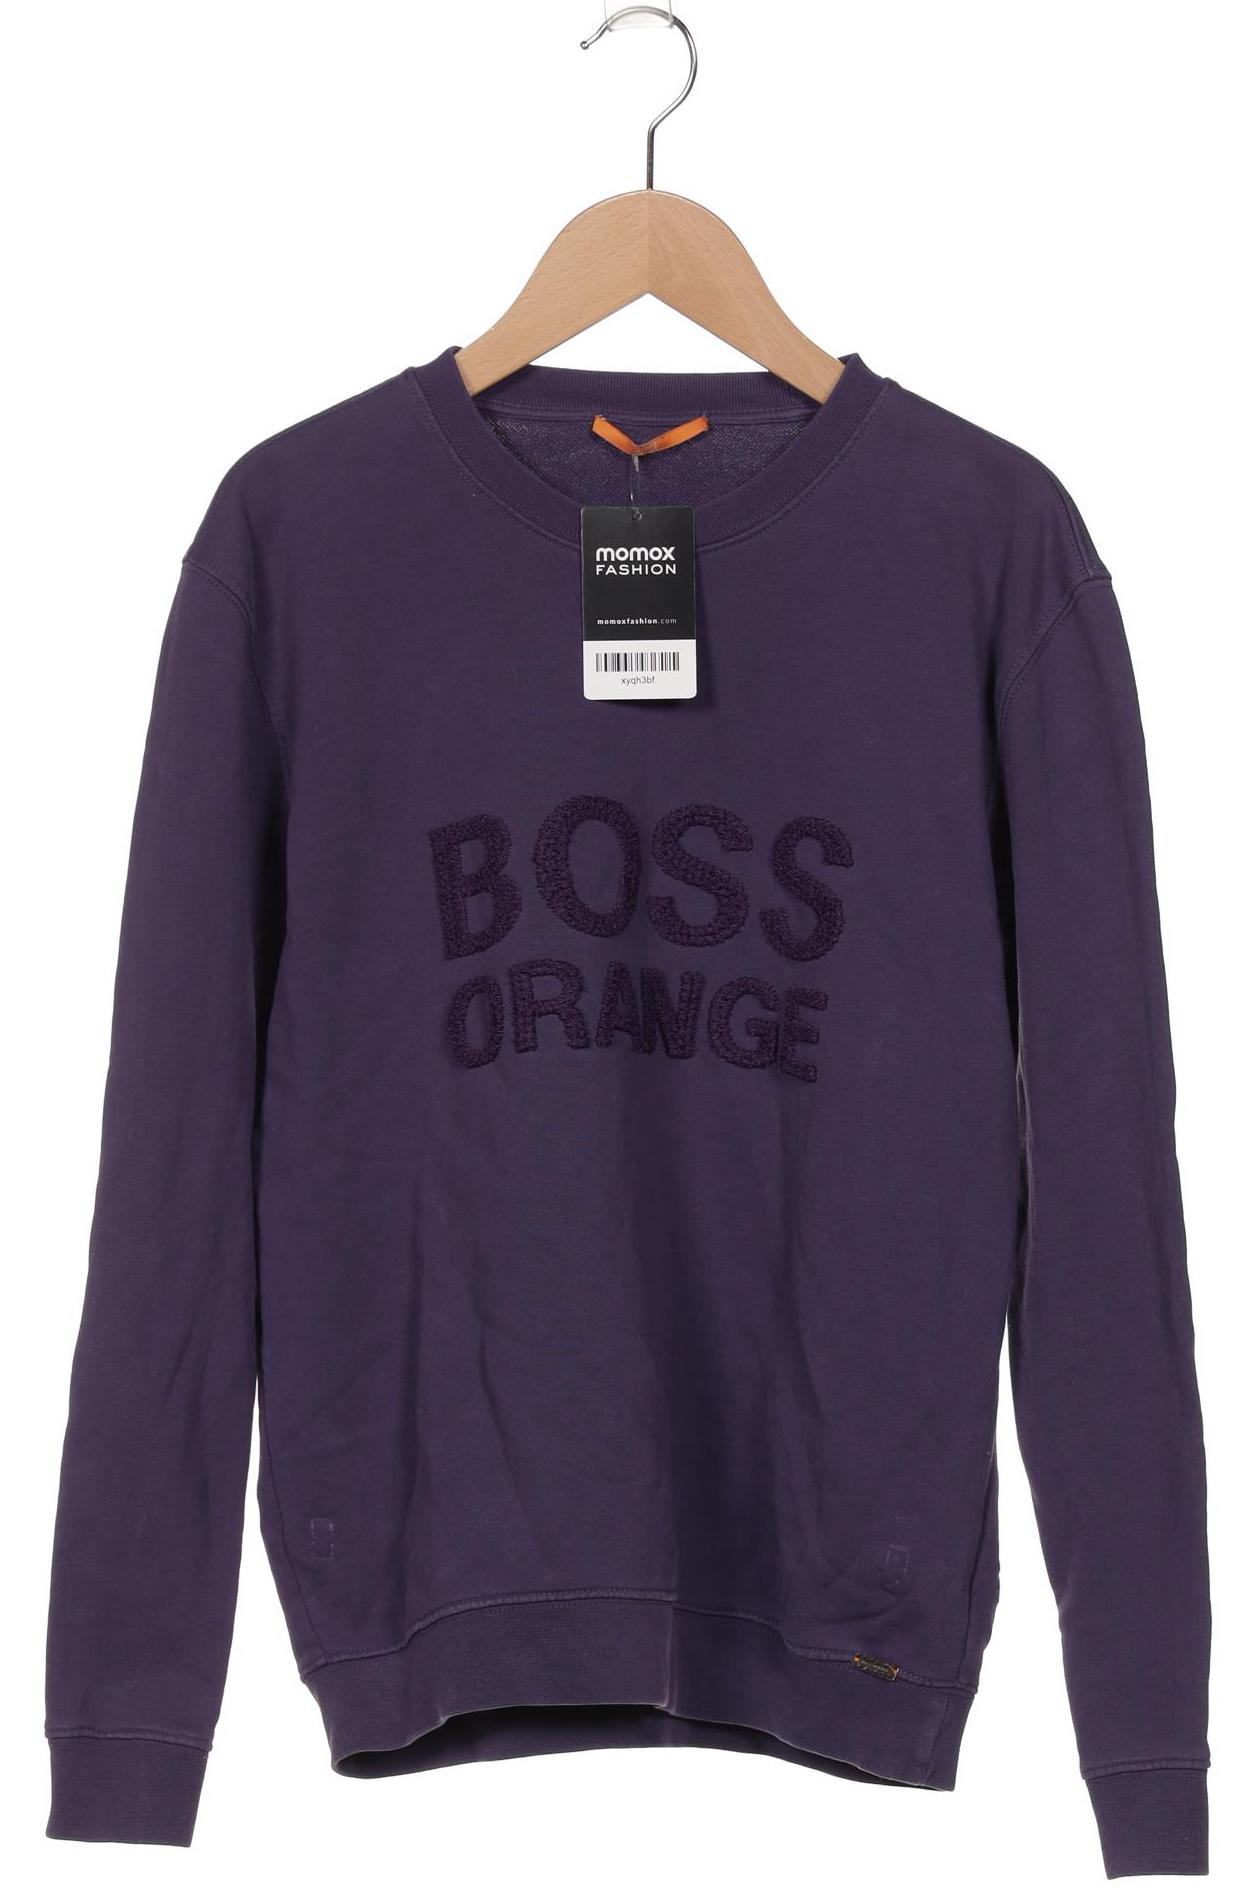 Boss Orange Damen Sweatshirt, flieder, Gr. 36 von Boss Orange